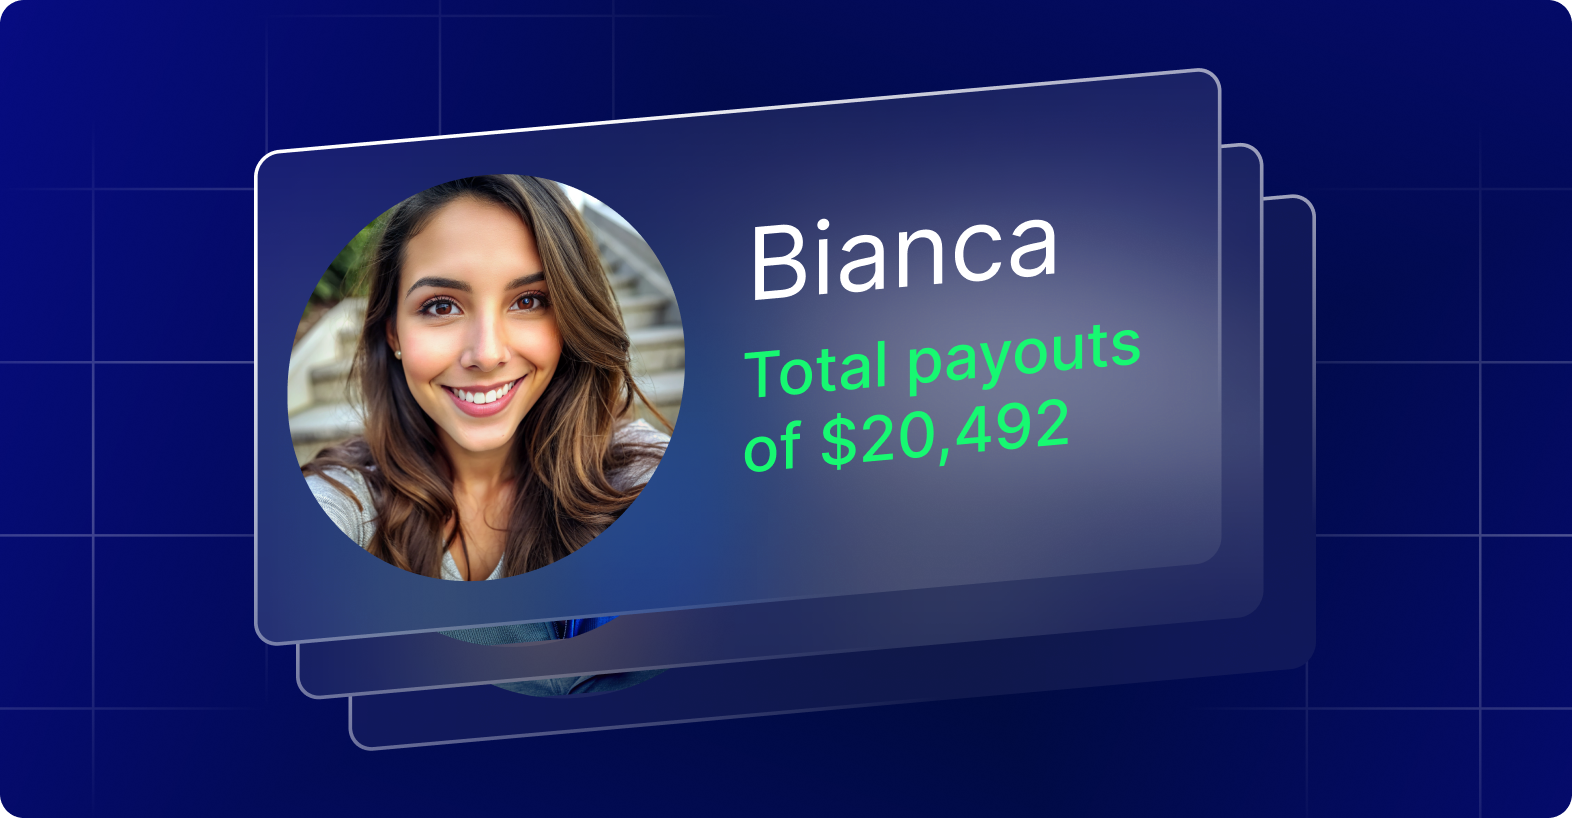 Logro de $20,492 de Bianca: Experta en Trading de Tendencias